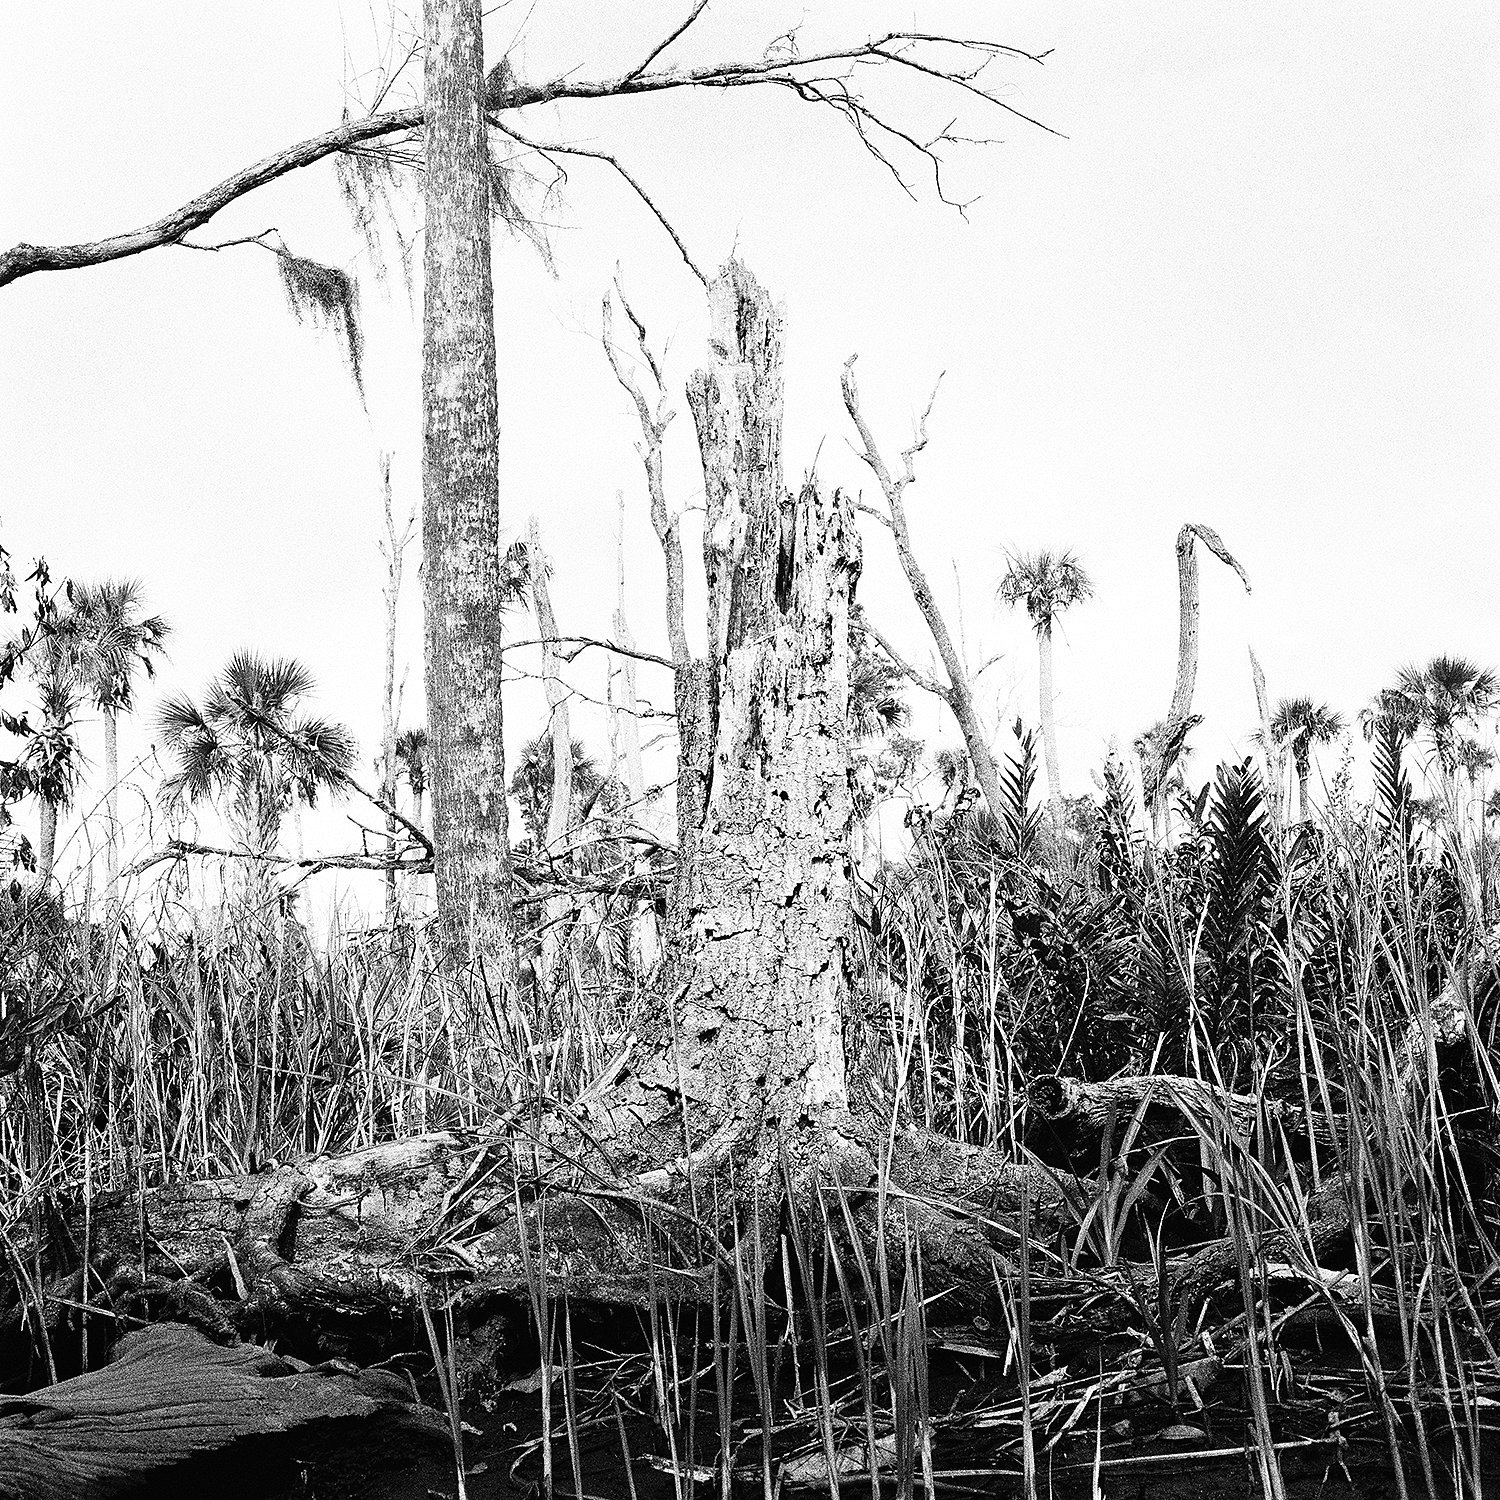 Stump & Dead Trees, 2015